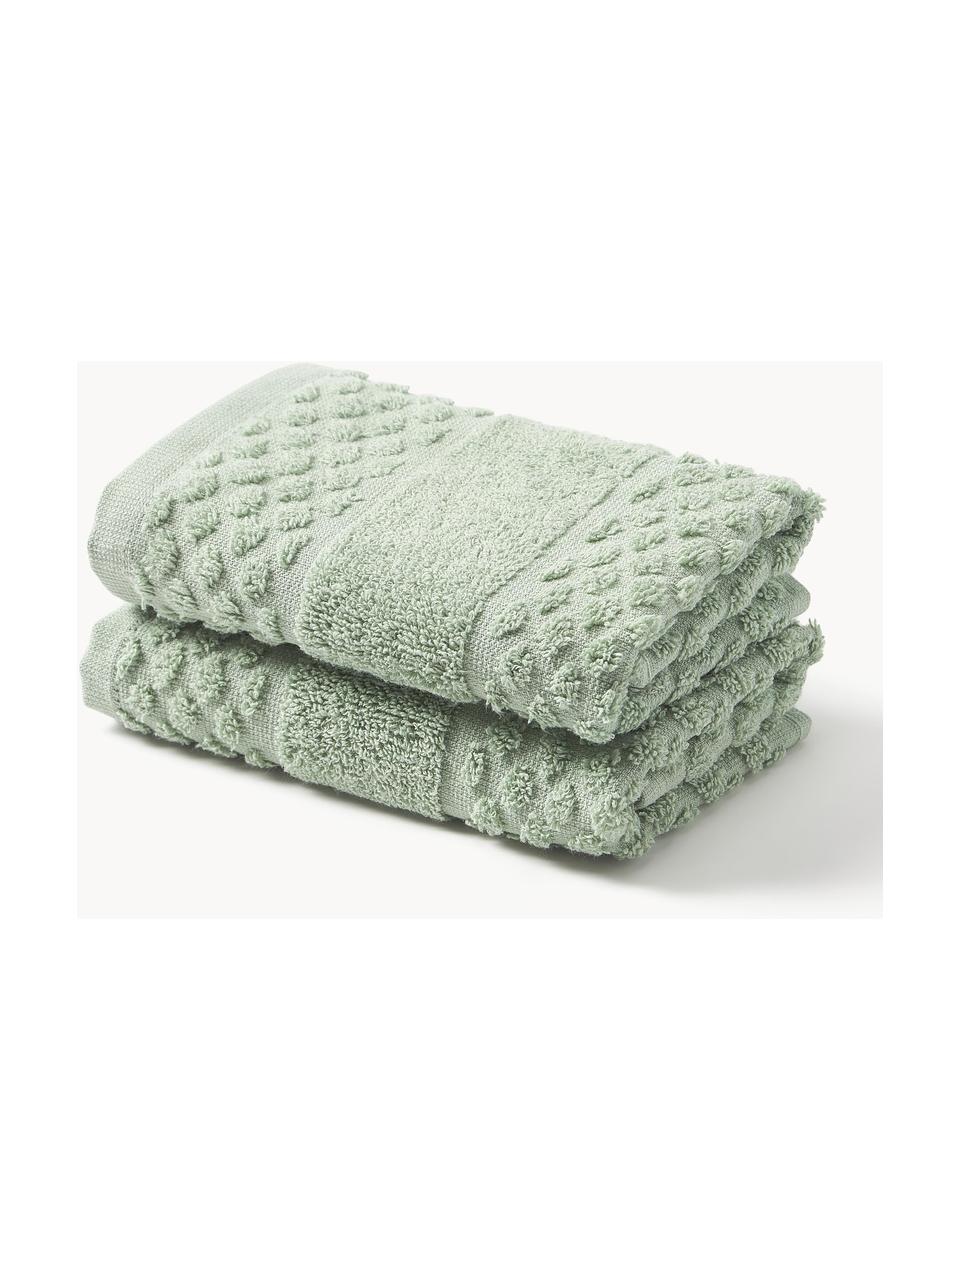 Ręcznik Katharina, różne rozmiary, Szałwiowy zielony, Ręcznik kąpielowy, S 70 x D 140 cm